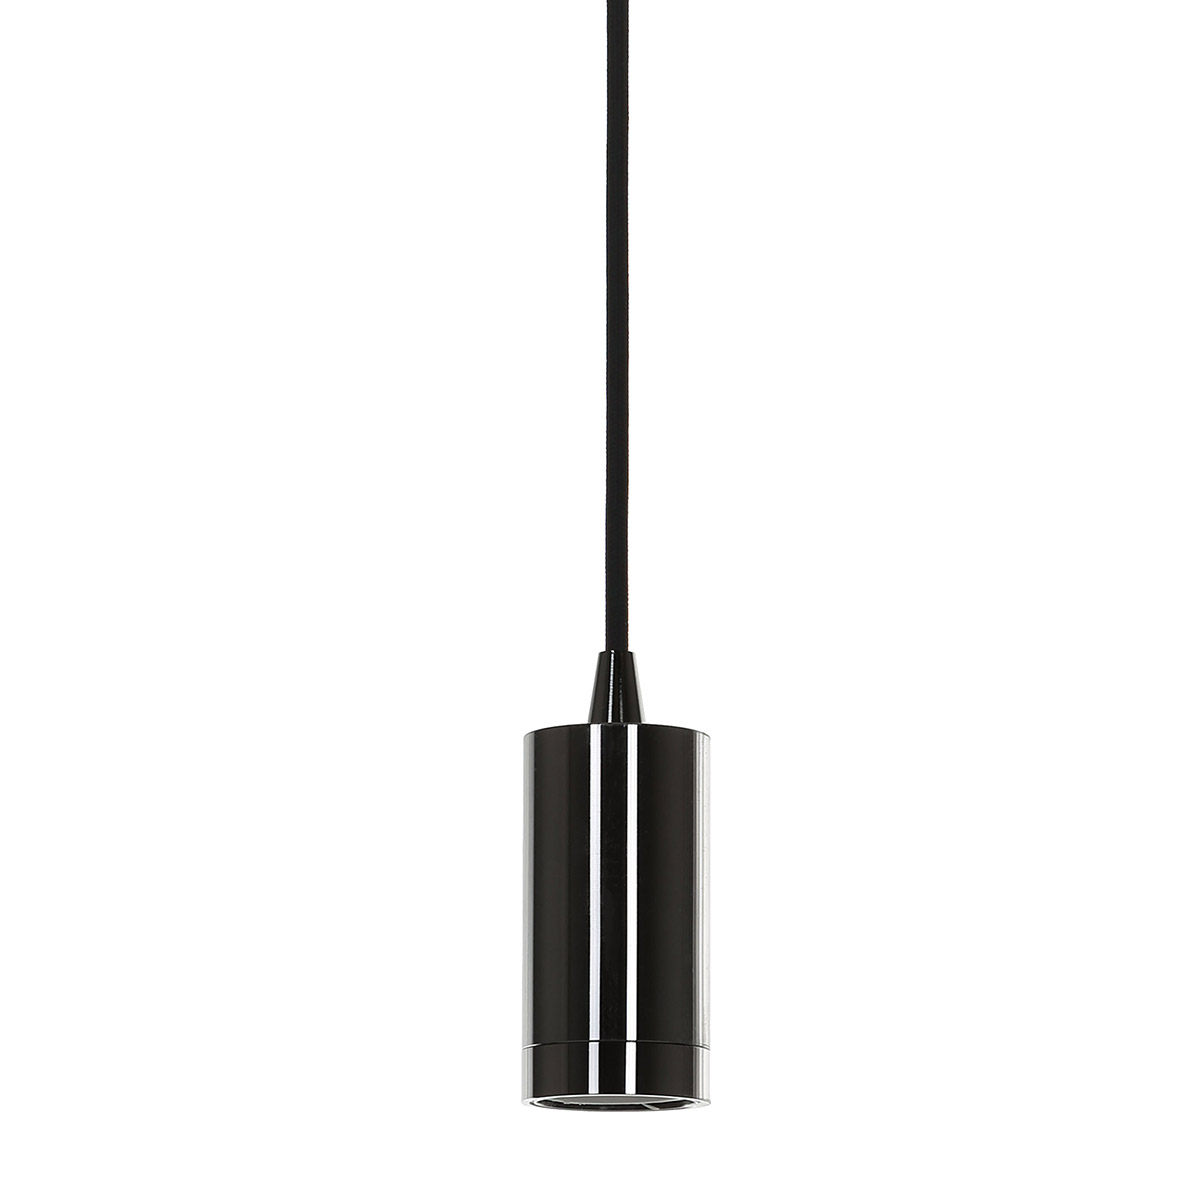 Italux Moderna DS-M-038 SHINY BLACK lampa wisząca zwis 1x60W E27 czarna połysk >>> RABATUJEMY DO 20% KAŻDE ZAMÓWIENIE!!! - wysyłka w 24h